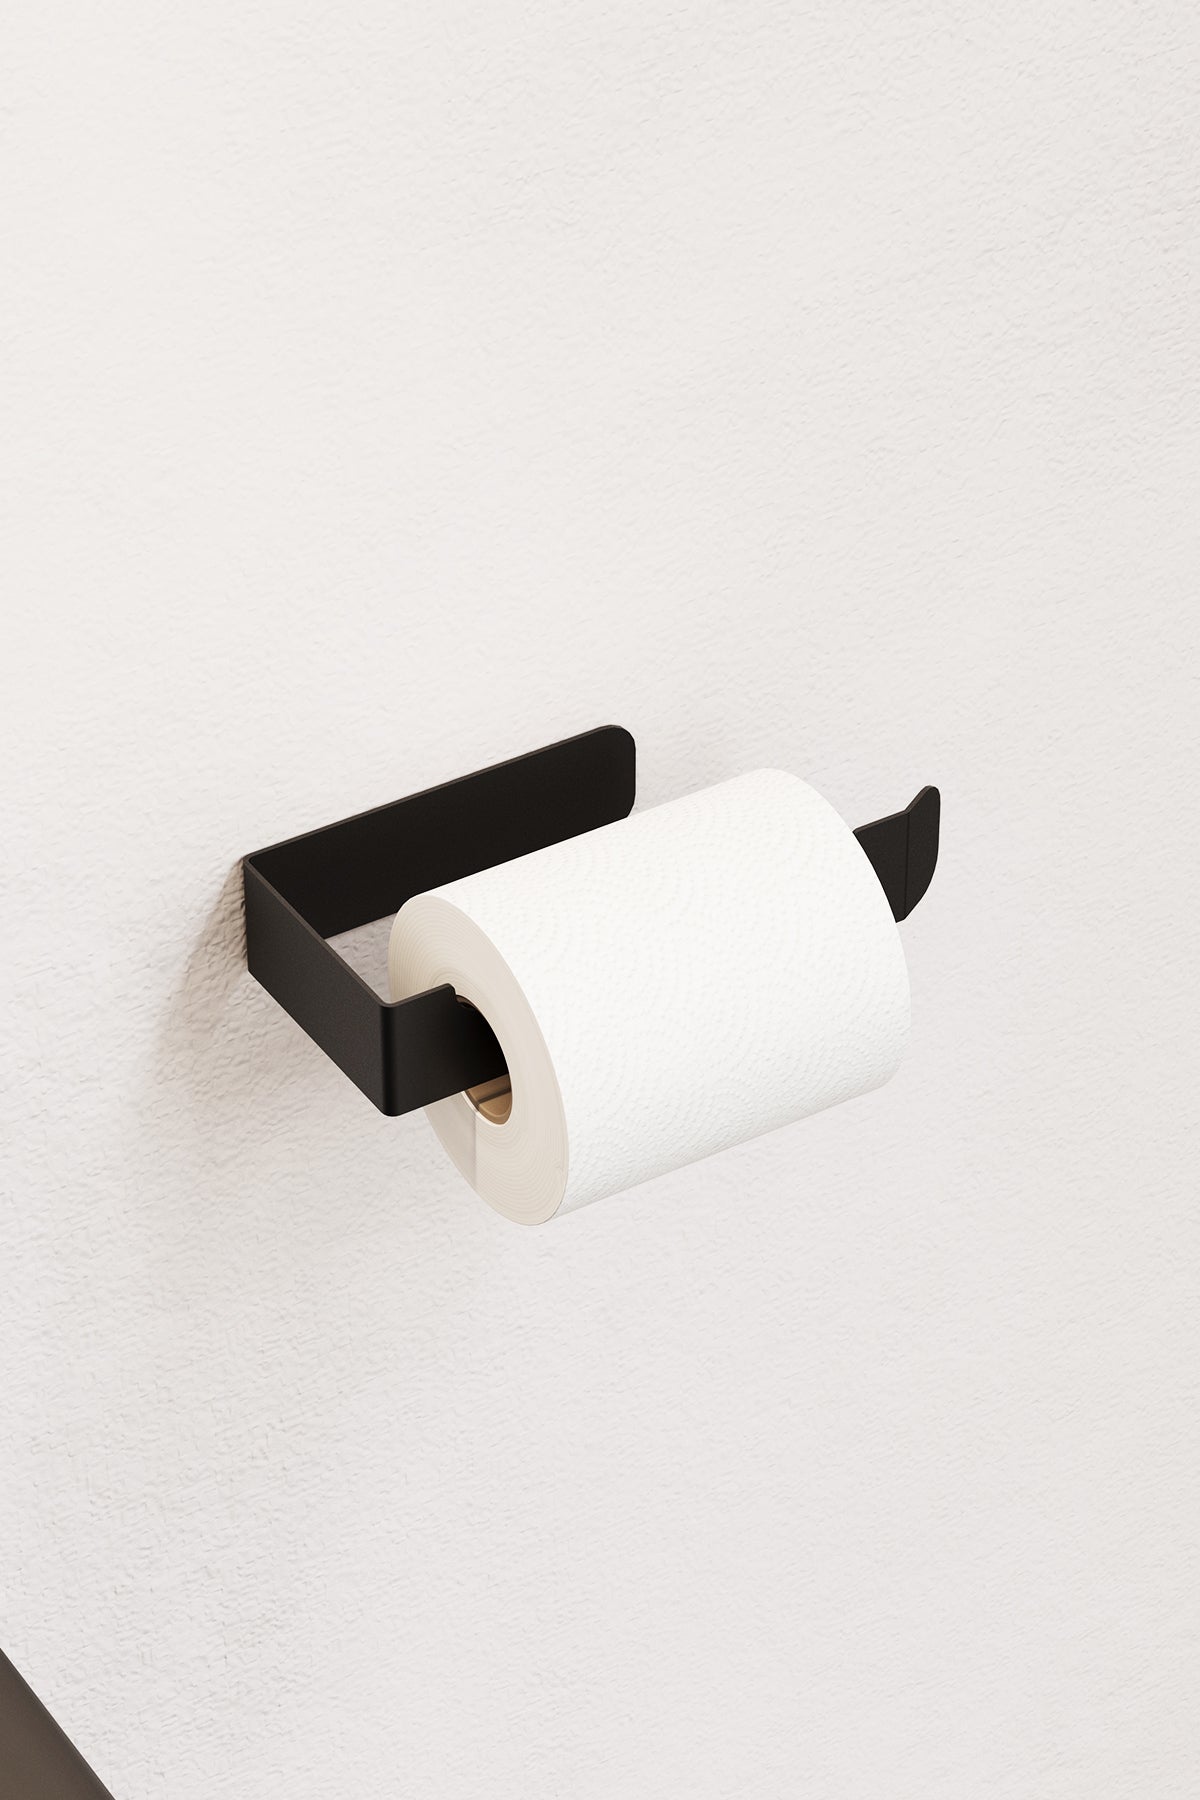 Paslanmaz Çelik Yapışkanlı Tuvalet Kağıdı Askısı , Modern Wc Kağıdı Standı - PİENZA